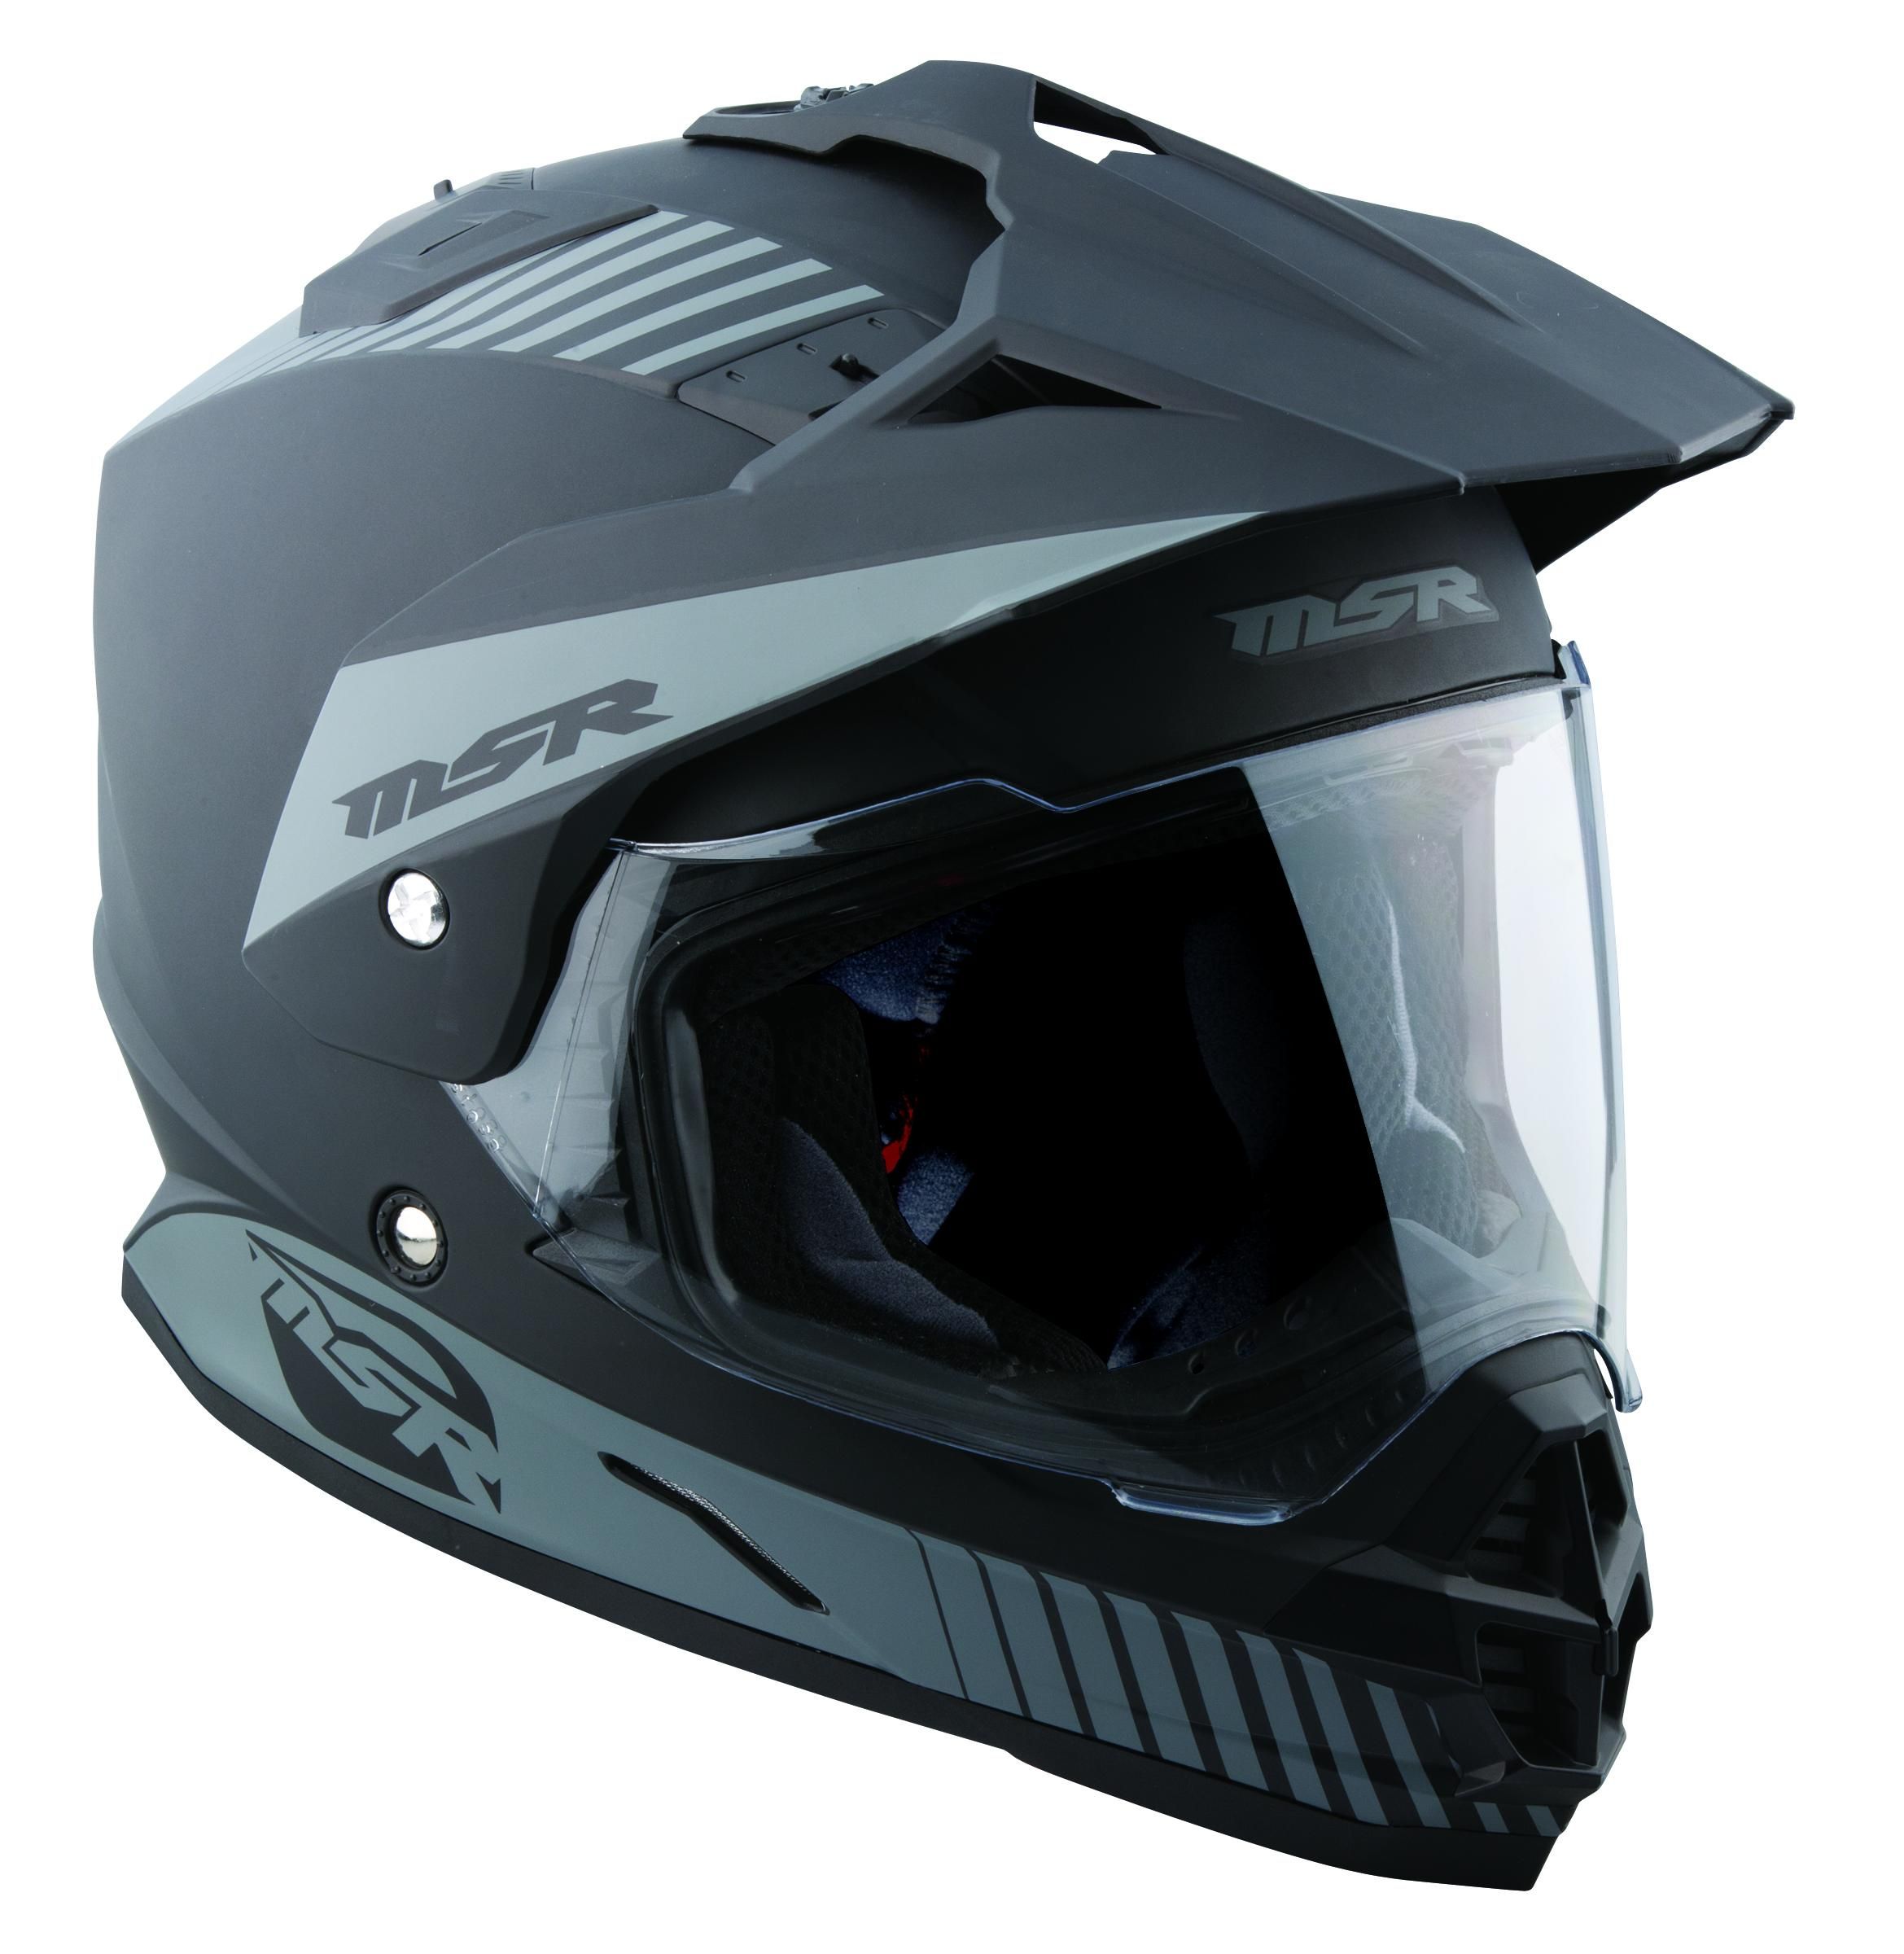 45XA-MSR-359195 Helmet Liner for M13 Xpedition Helmet - XS